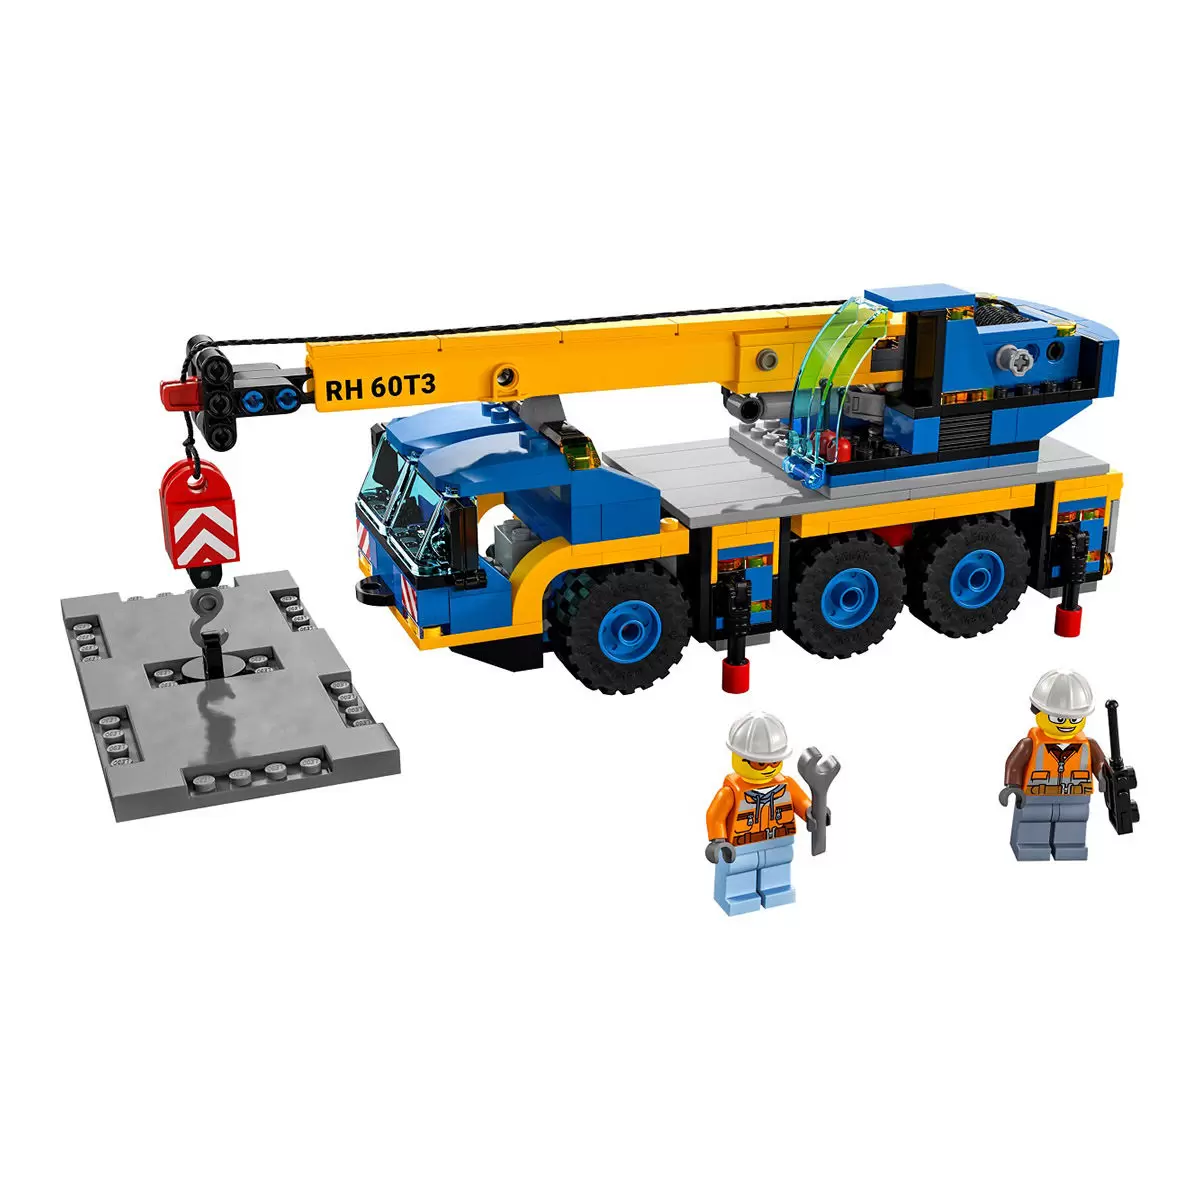 LEGO 城市系列 移動式起重機 60324